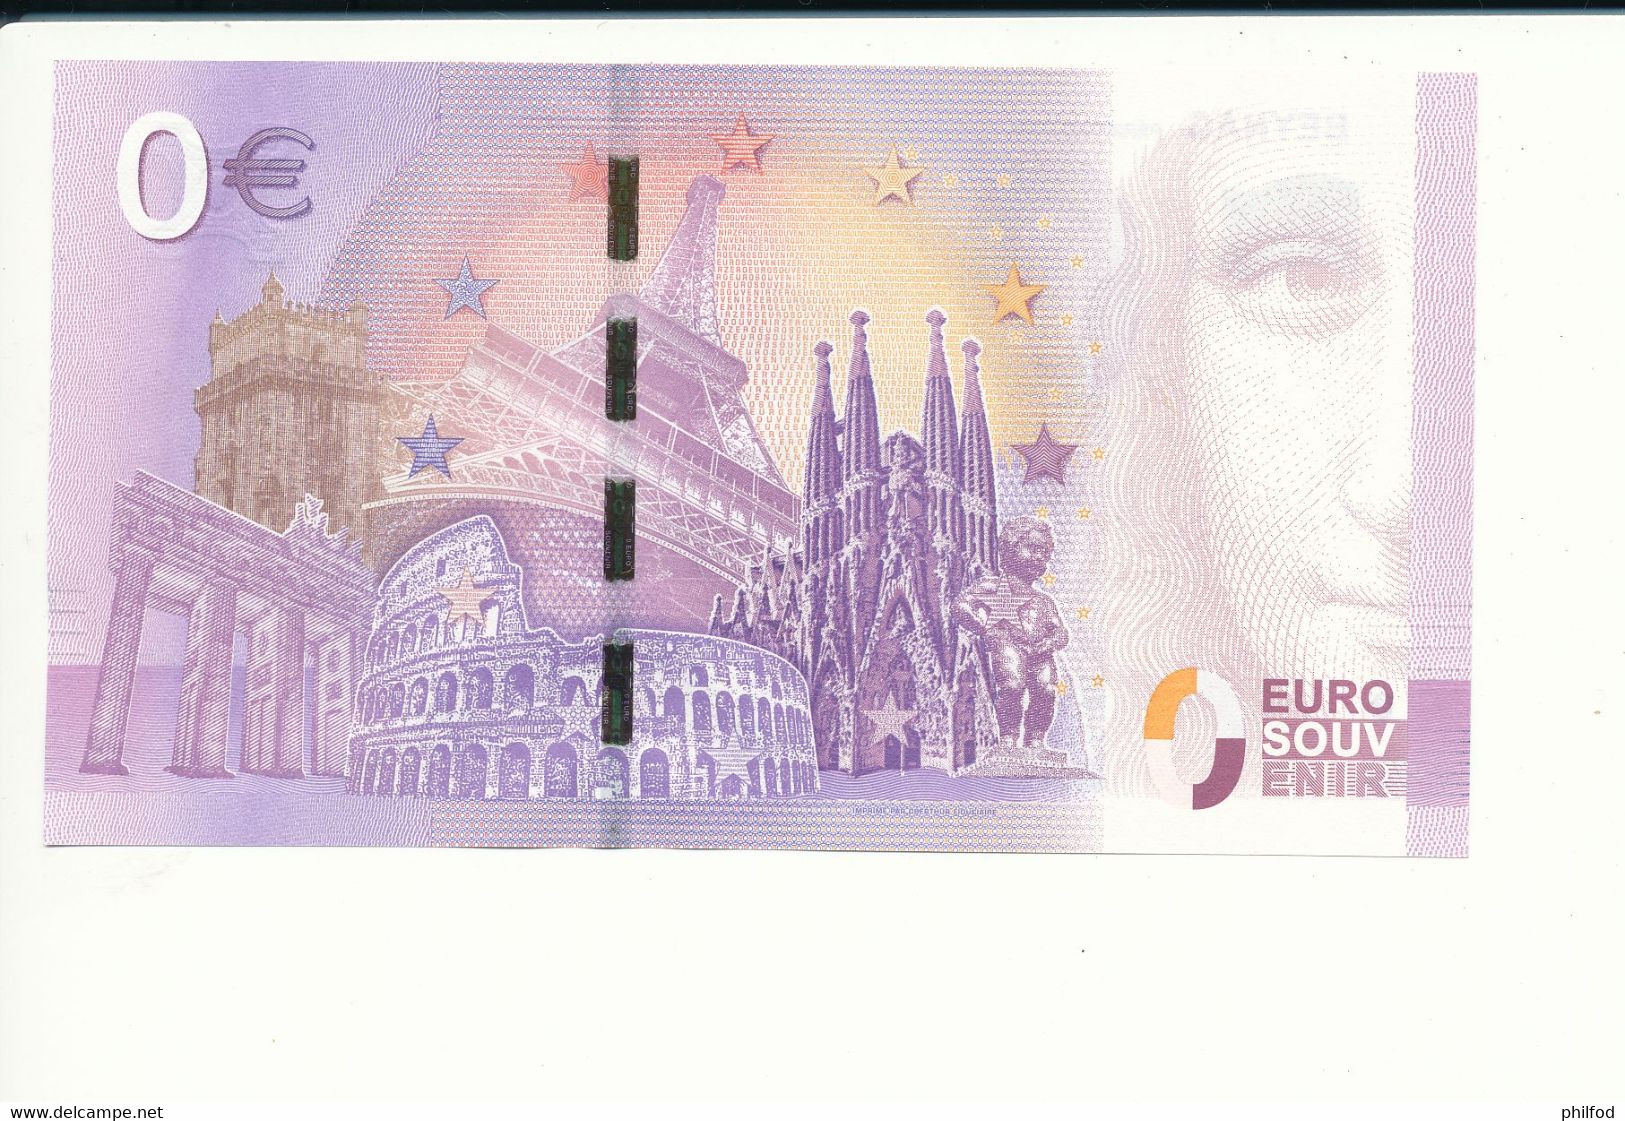 Billet Souvenir - 0 Euro - UELW - 2017- 1 - BEYNAC PERIGORD NOIR - N° 153 - Billet épuisé - Mezclas - Billetes